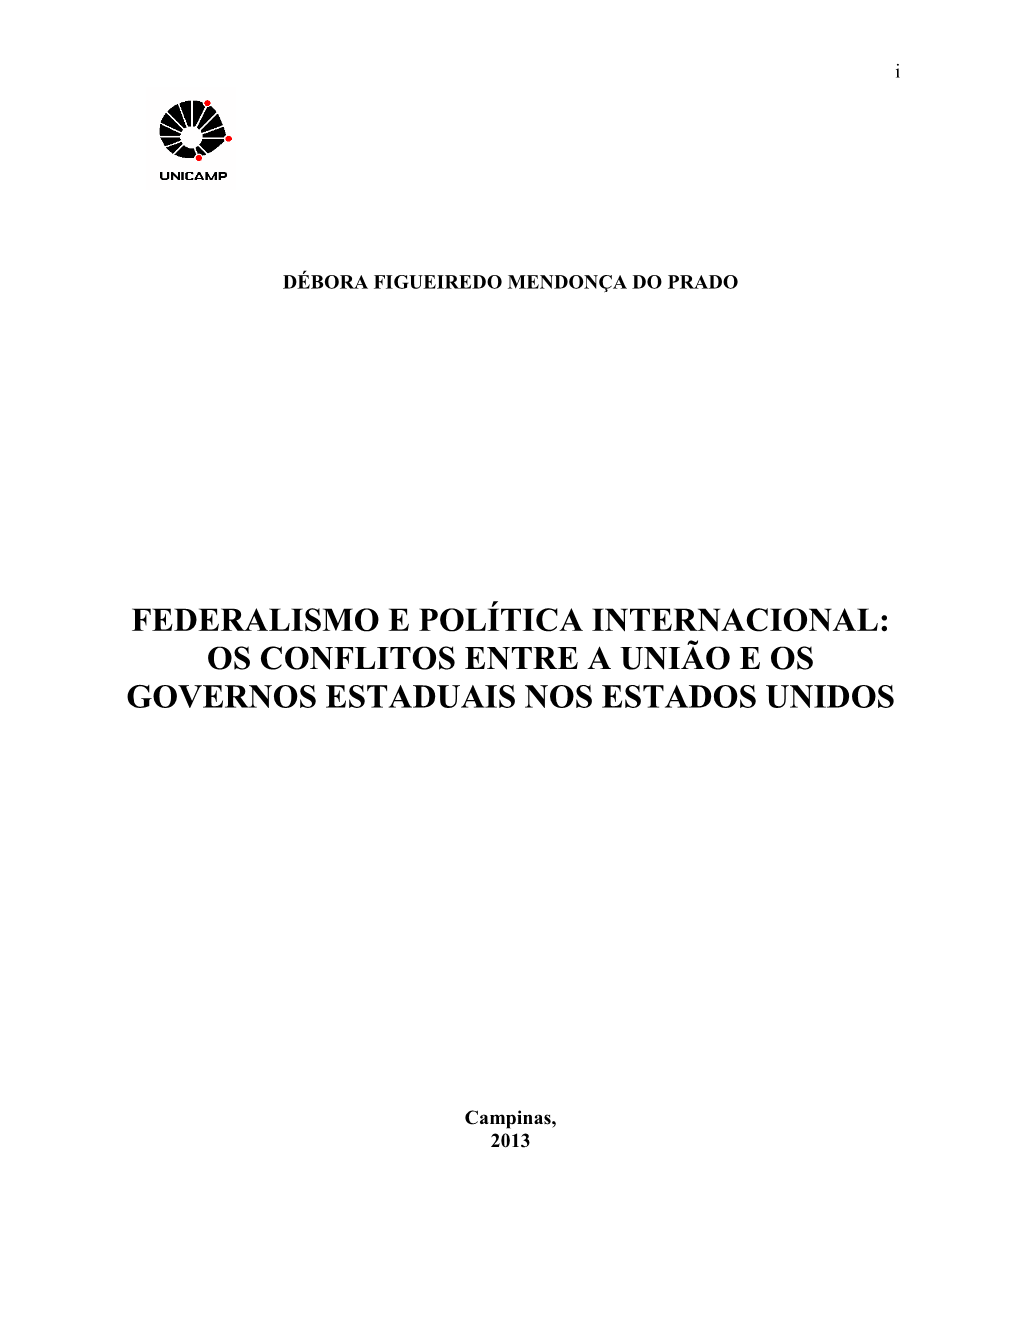 Federalismo E Política Internacional: Os Conflitos Entre a União E Os Governos Estaduais Nos Estados Unidos